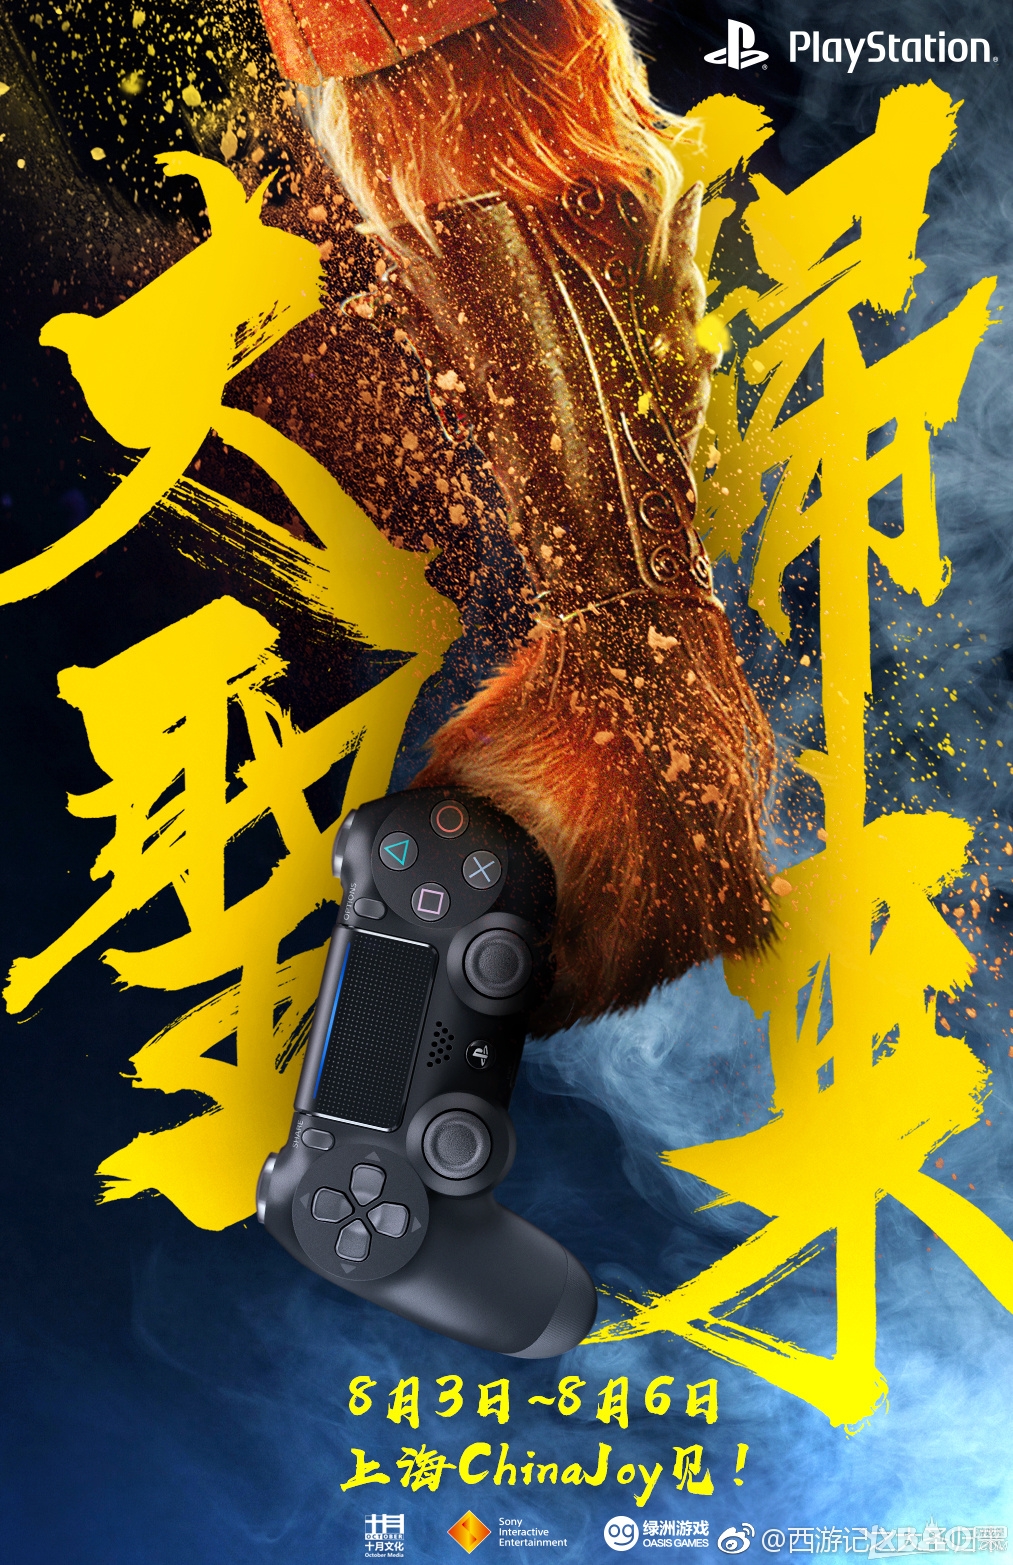 PS4 游戏《西游记之大圣归来》8月初在上海CJ亮相